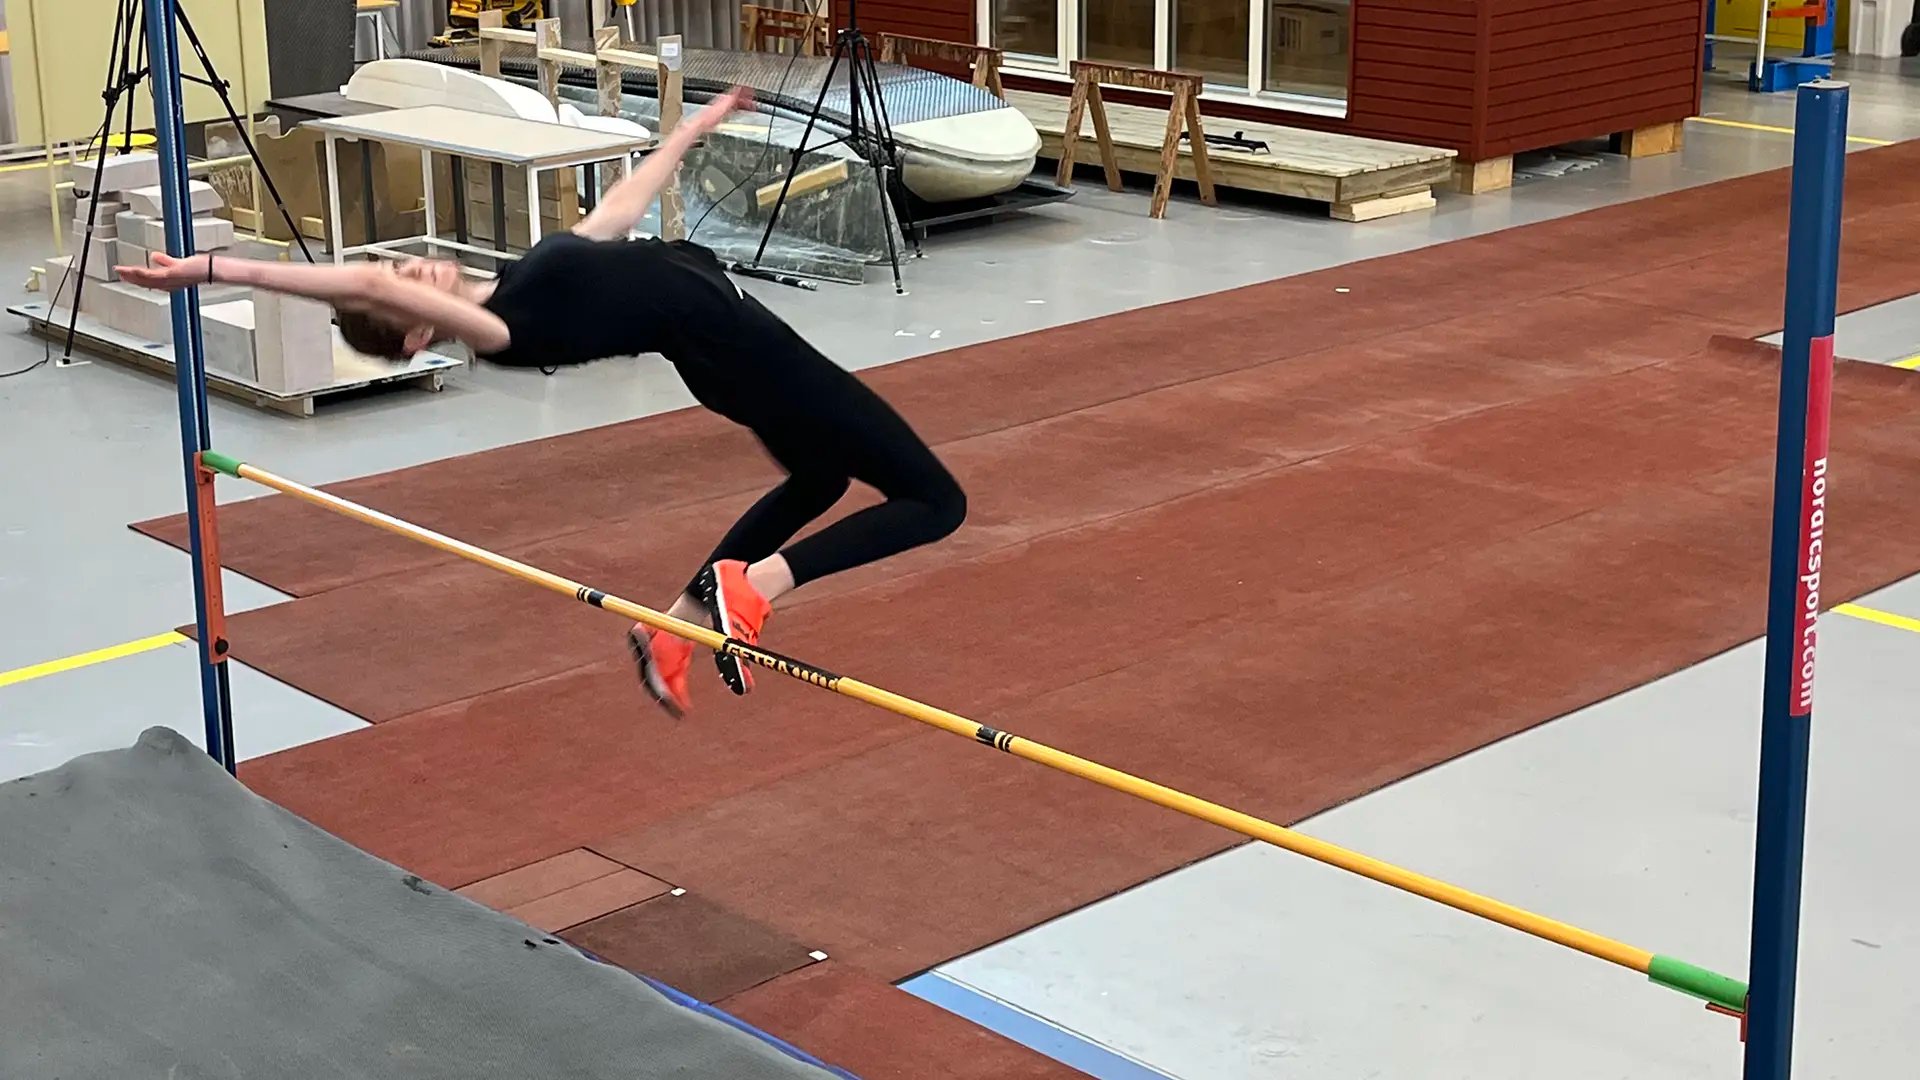 Smilla Arkdal Ranebro, en talangfull junior hoppade höjdhopp med avstamp på kraftplattor i golvet och med IMU-mätare på sig, vilket står för Inertial measurement unit (IMU) och den mäter bland annat acceleration och vinklar på hopparens kropp.